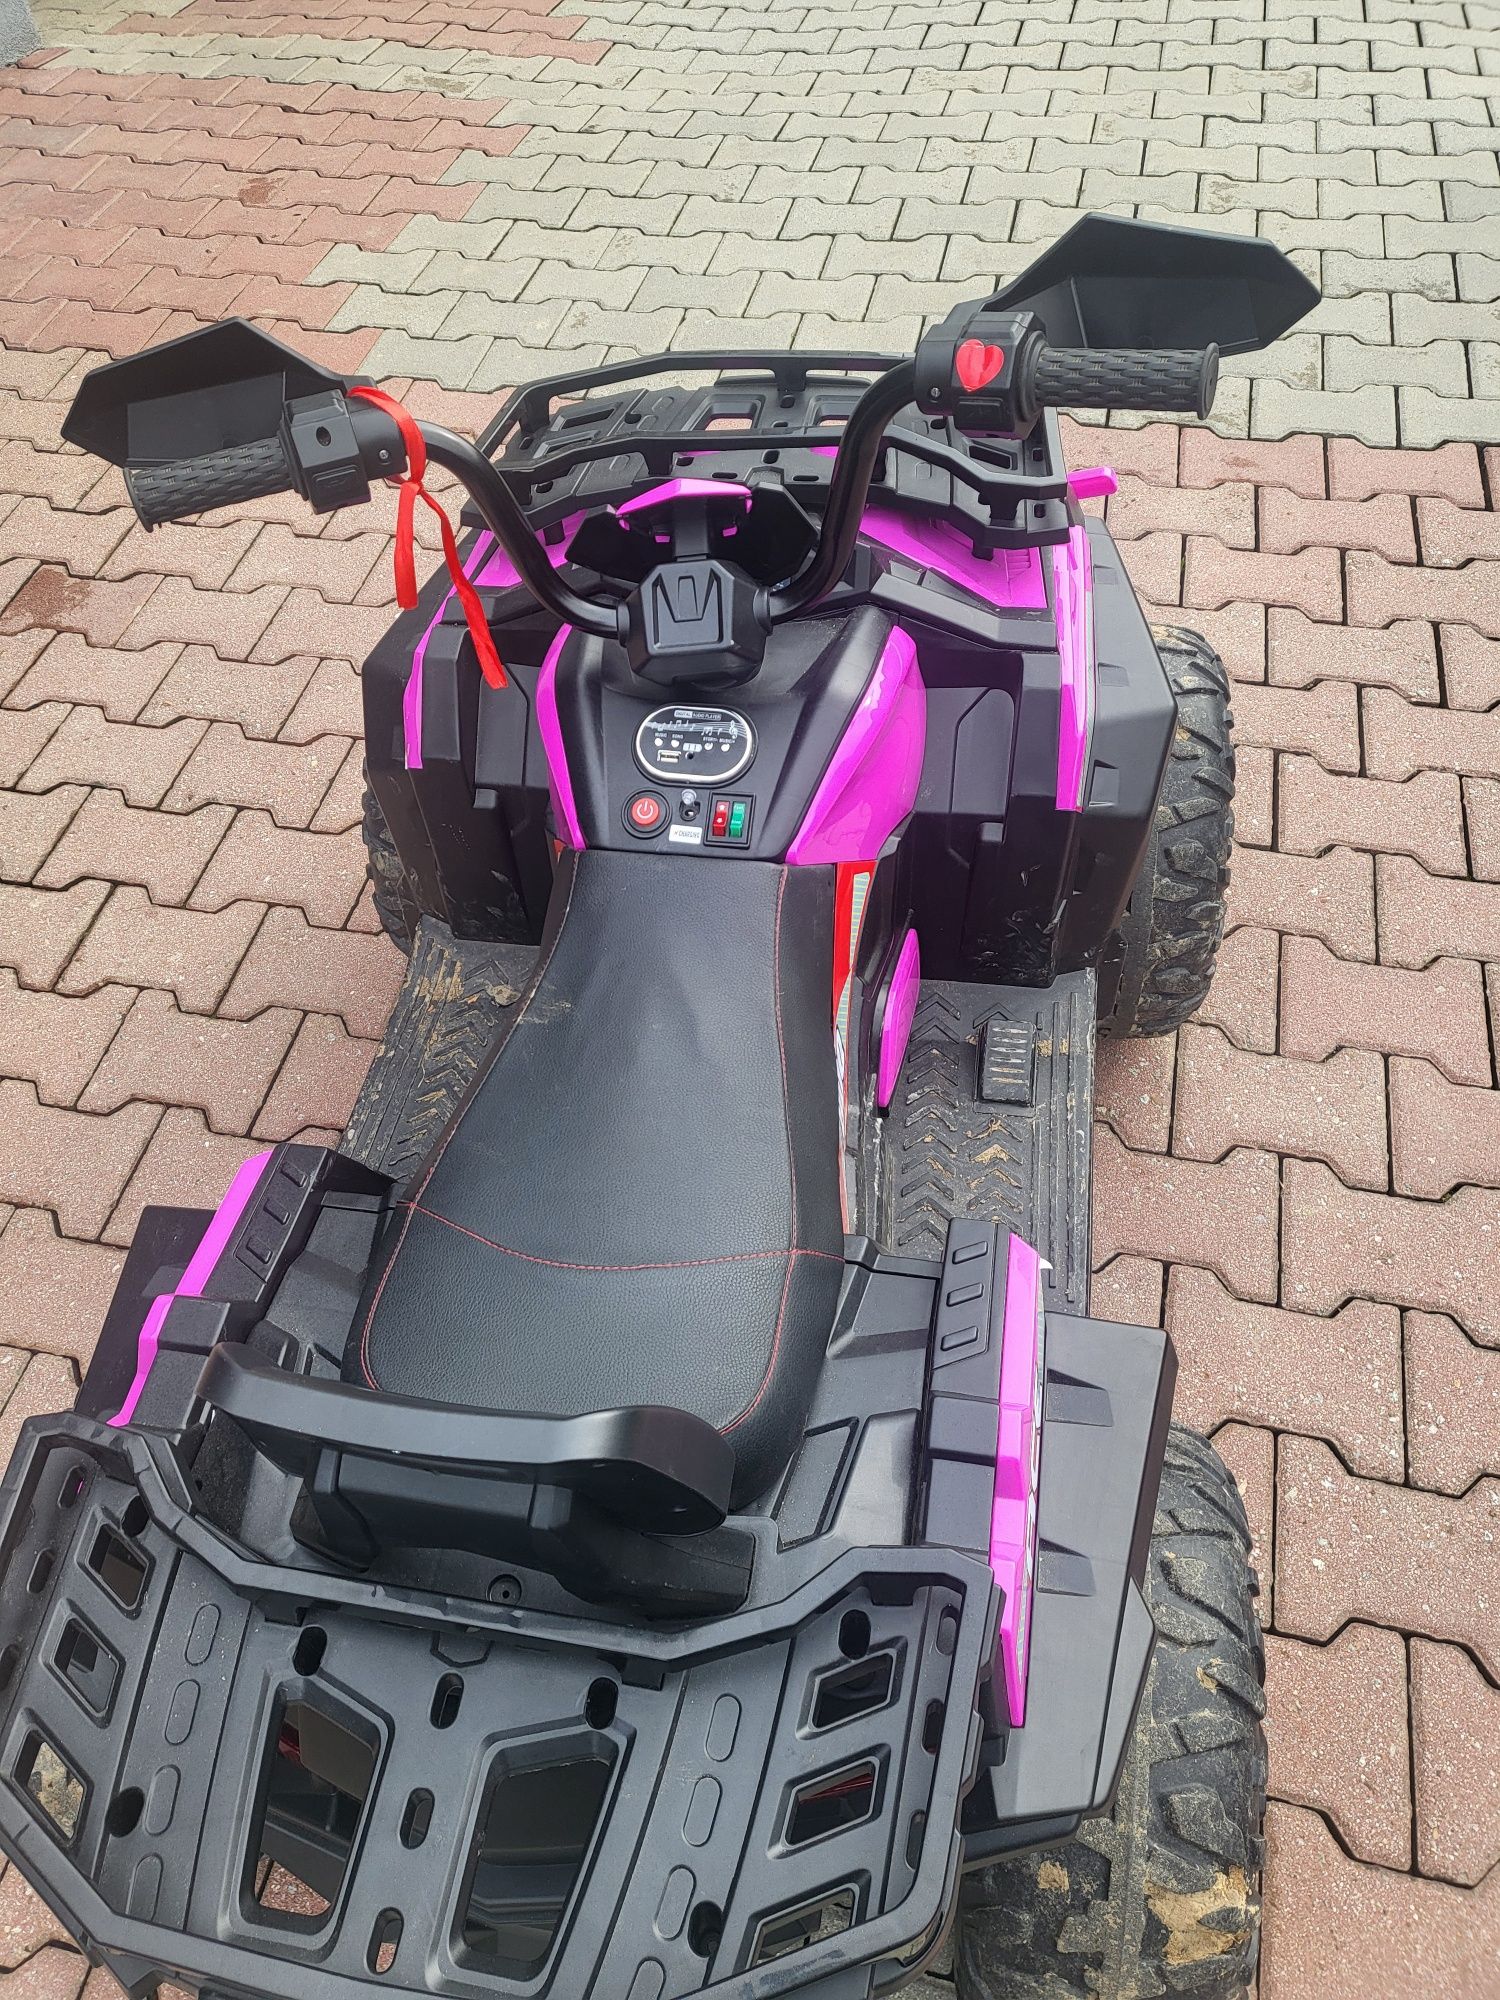 Quad / autko terenowe dla dziecka akumulator różowy